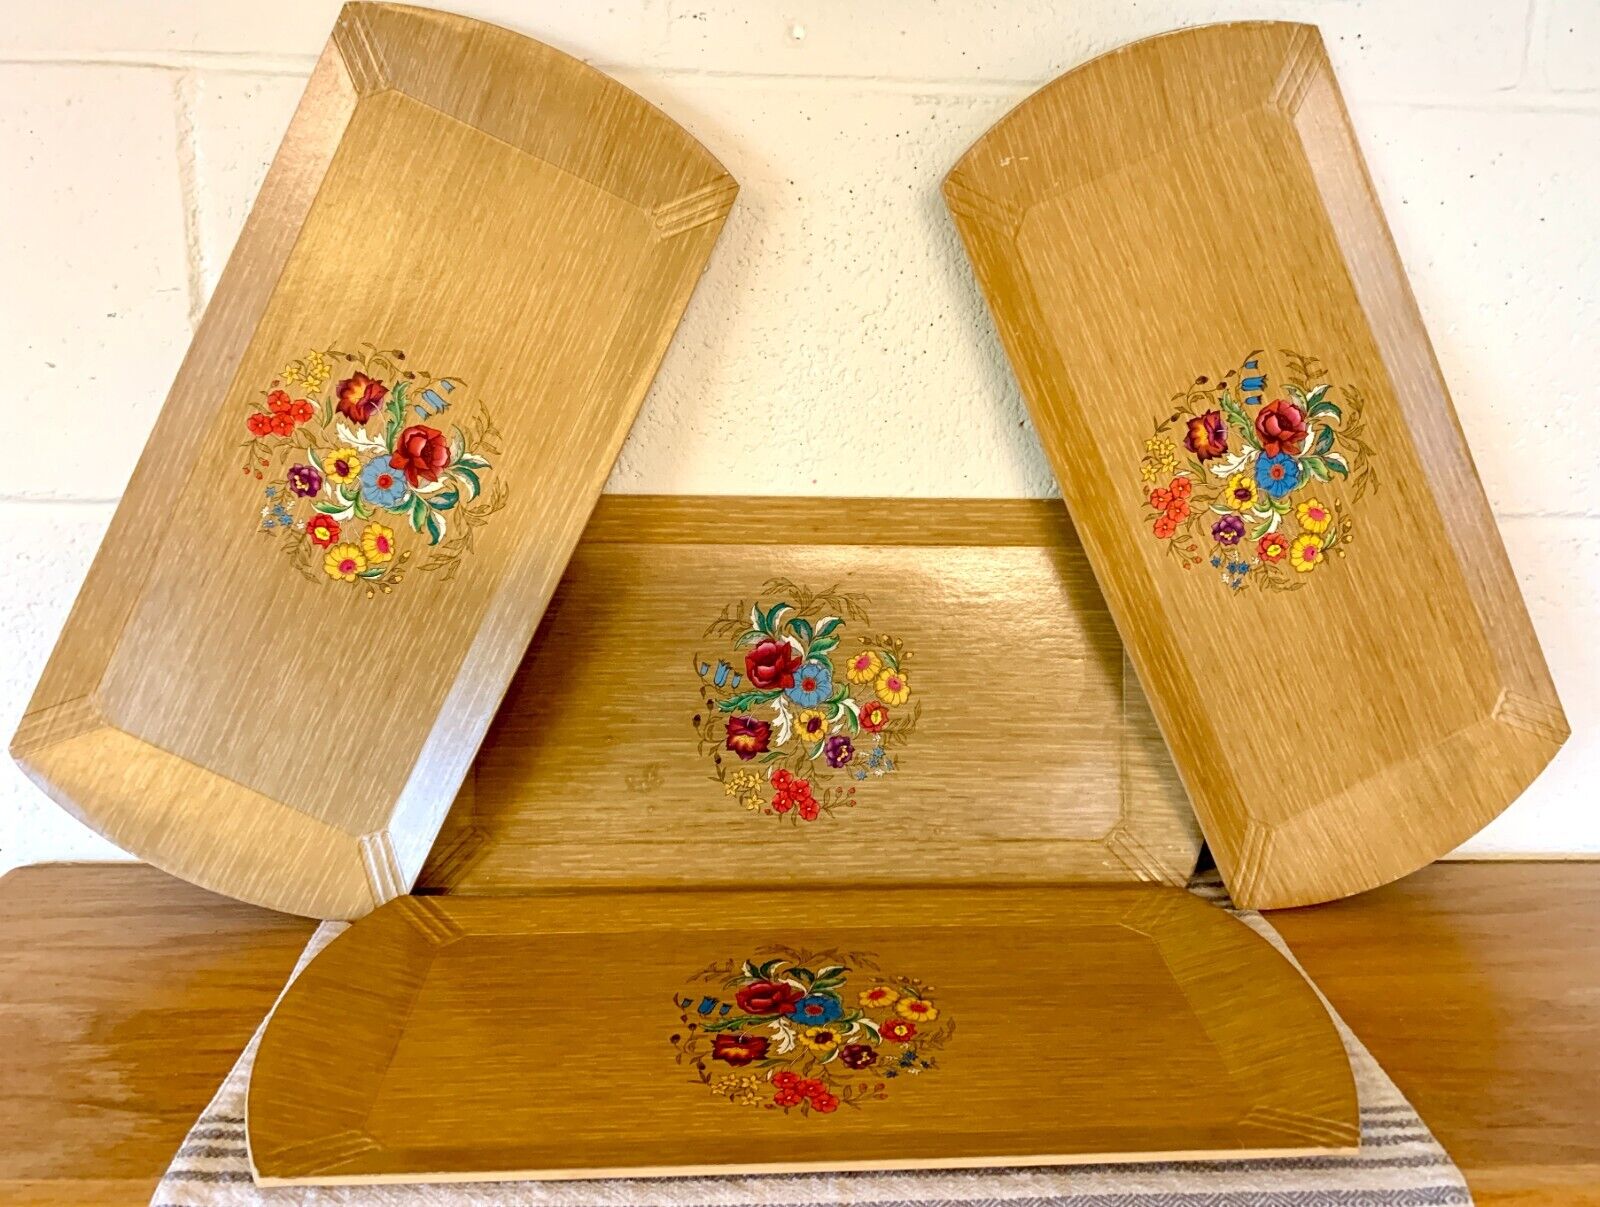 Set of 4 Hasko Haskelite Snack Trays Floral Wood Grain Veneer c1940s-50s Vintage